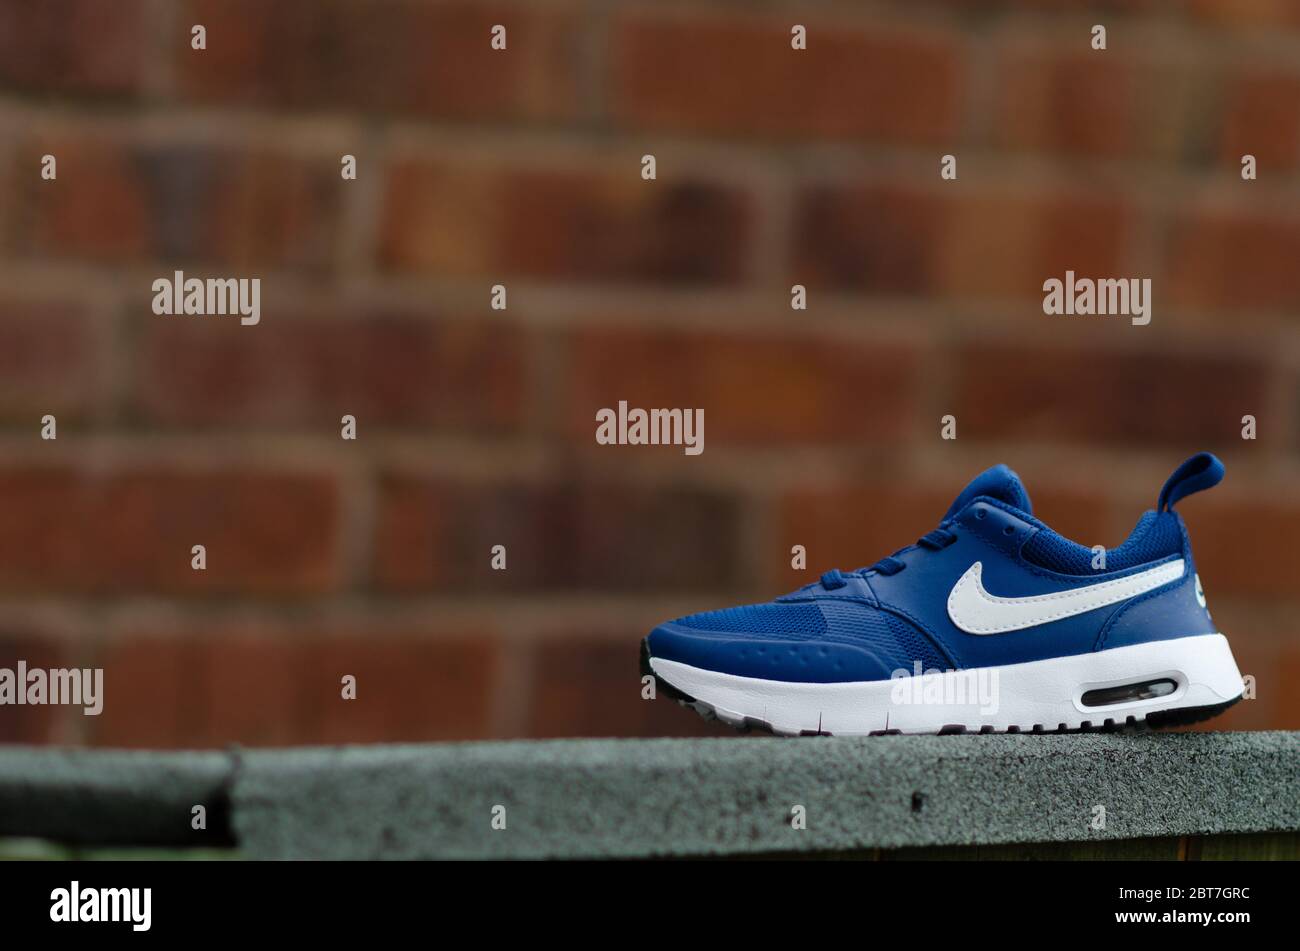 La photo en gros plan de la paire de baskets Nike Air bleues pour enfant.  Le mur de briques est sur l'arrière-plan. Le champ de vision peu profond a  été utilisé pour